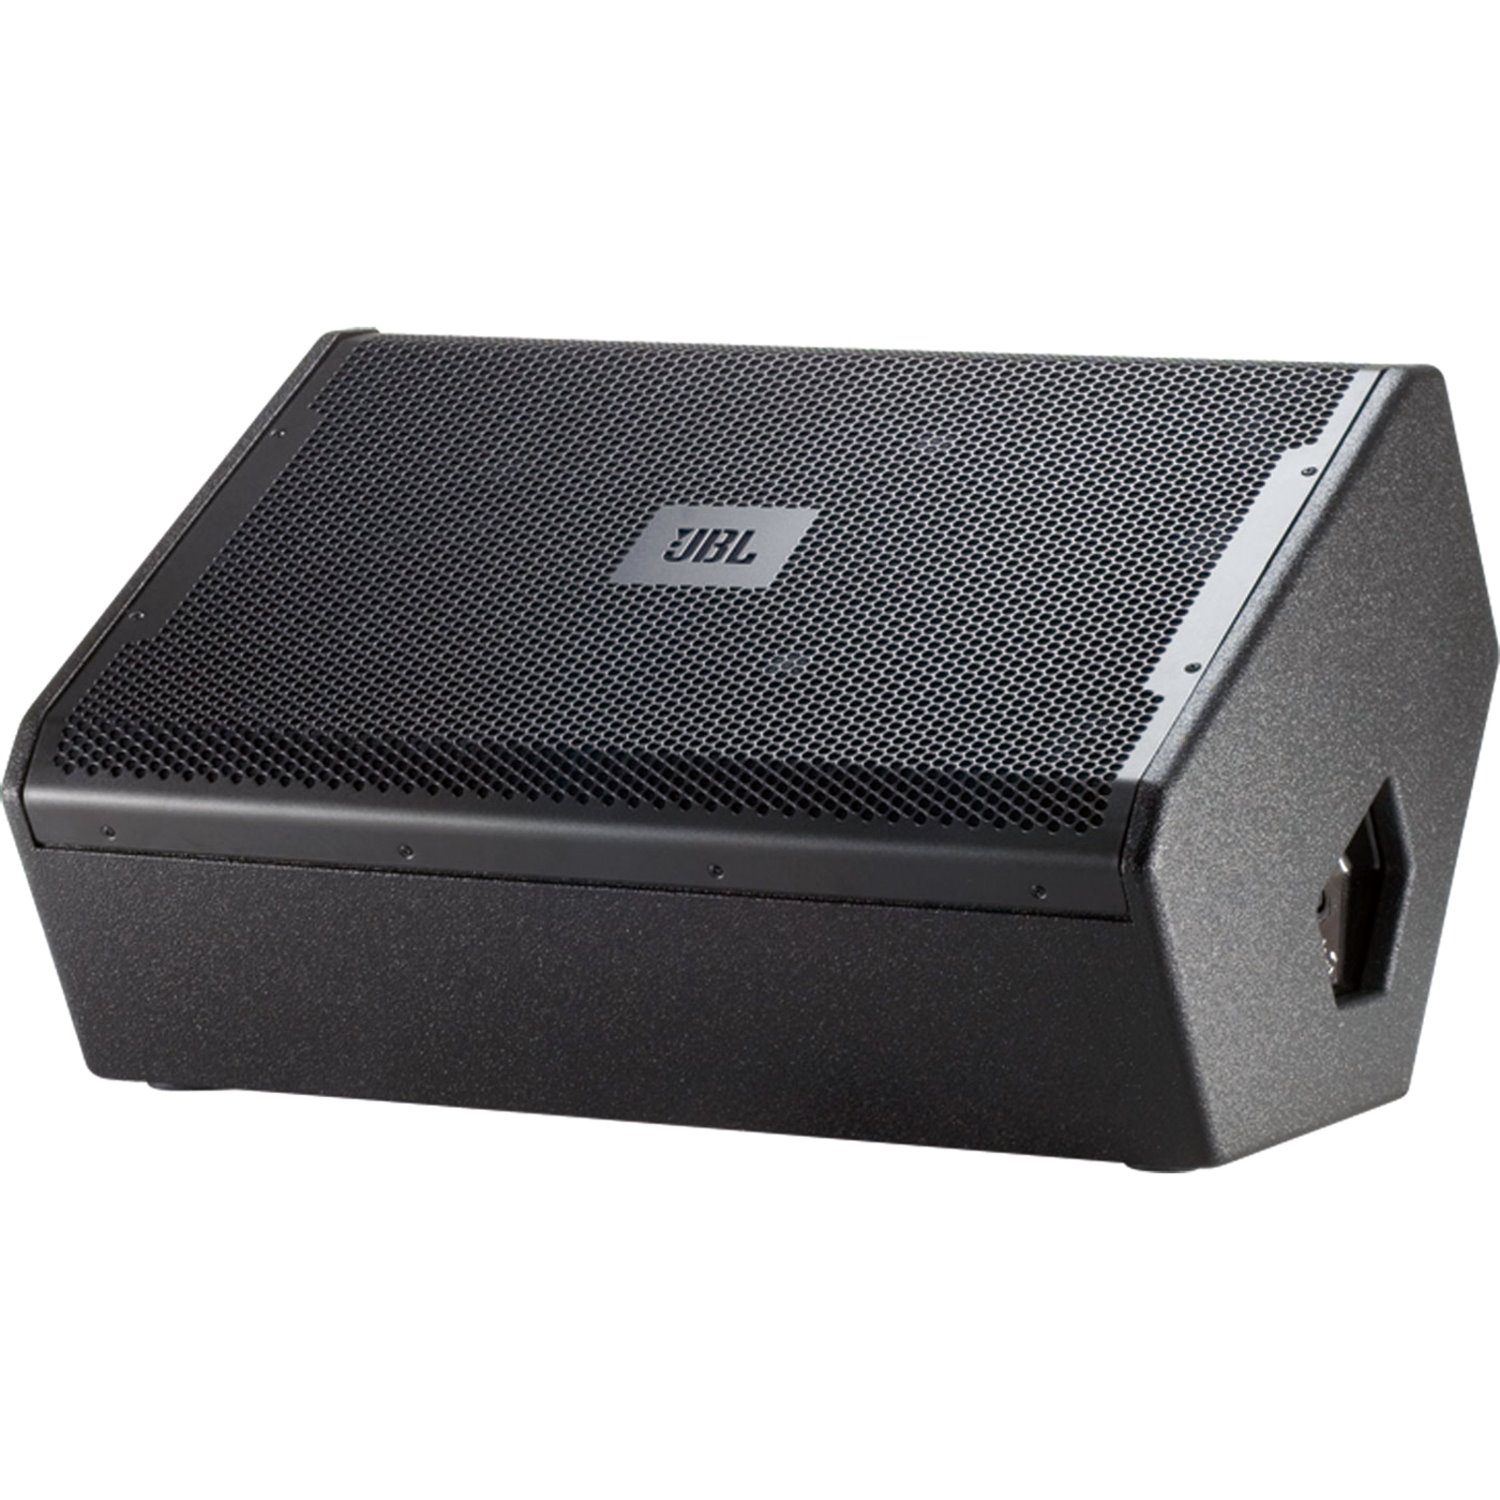 JBL Professional VRX915M 2-way Speaker - 800 W RMS - Black